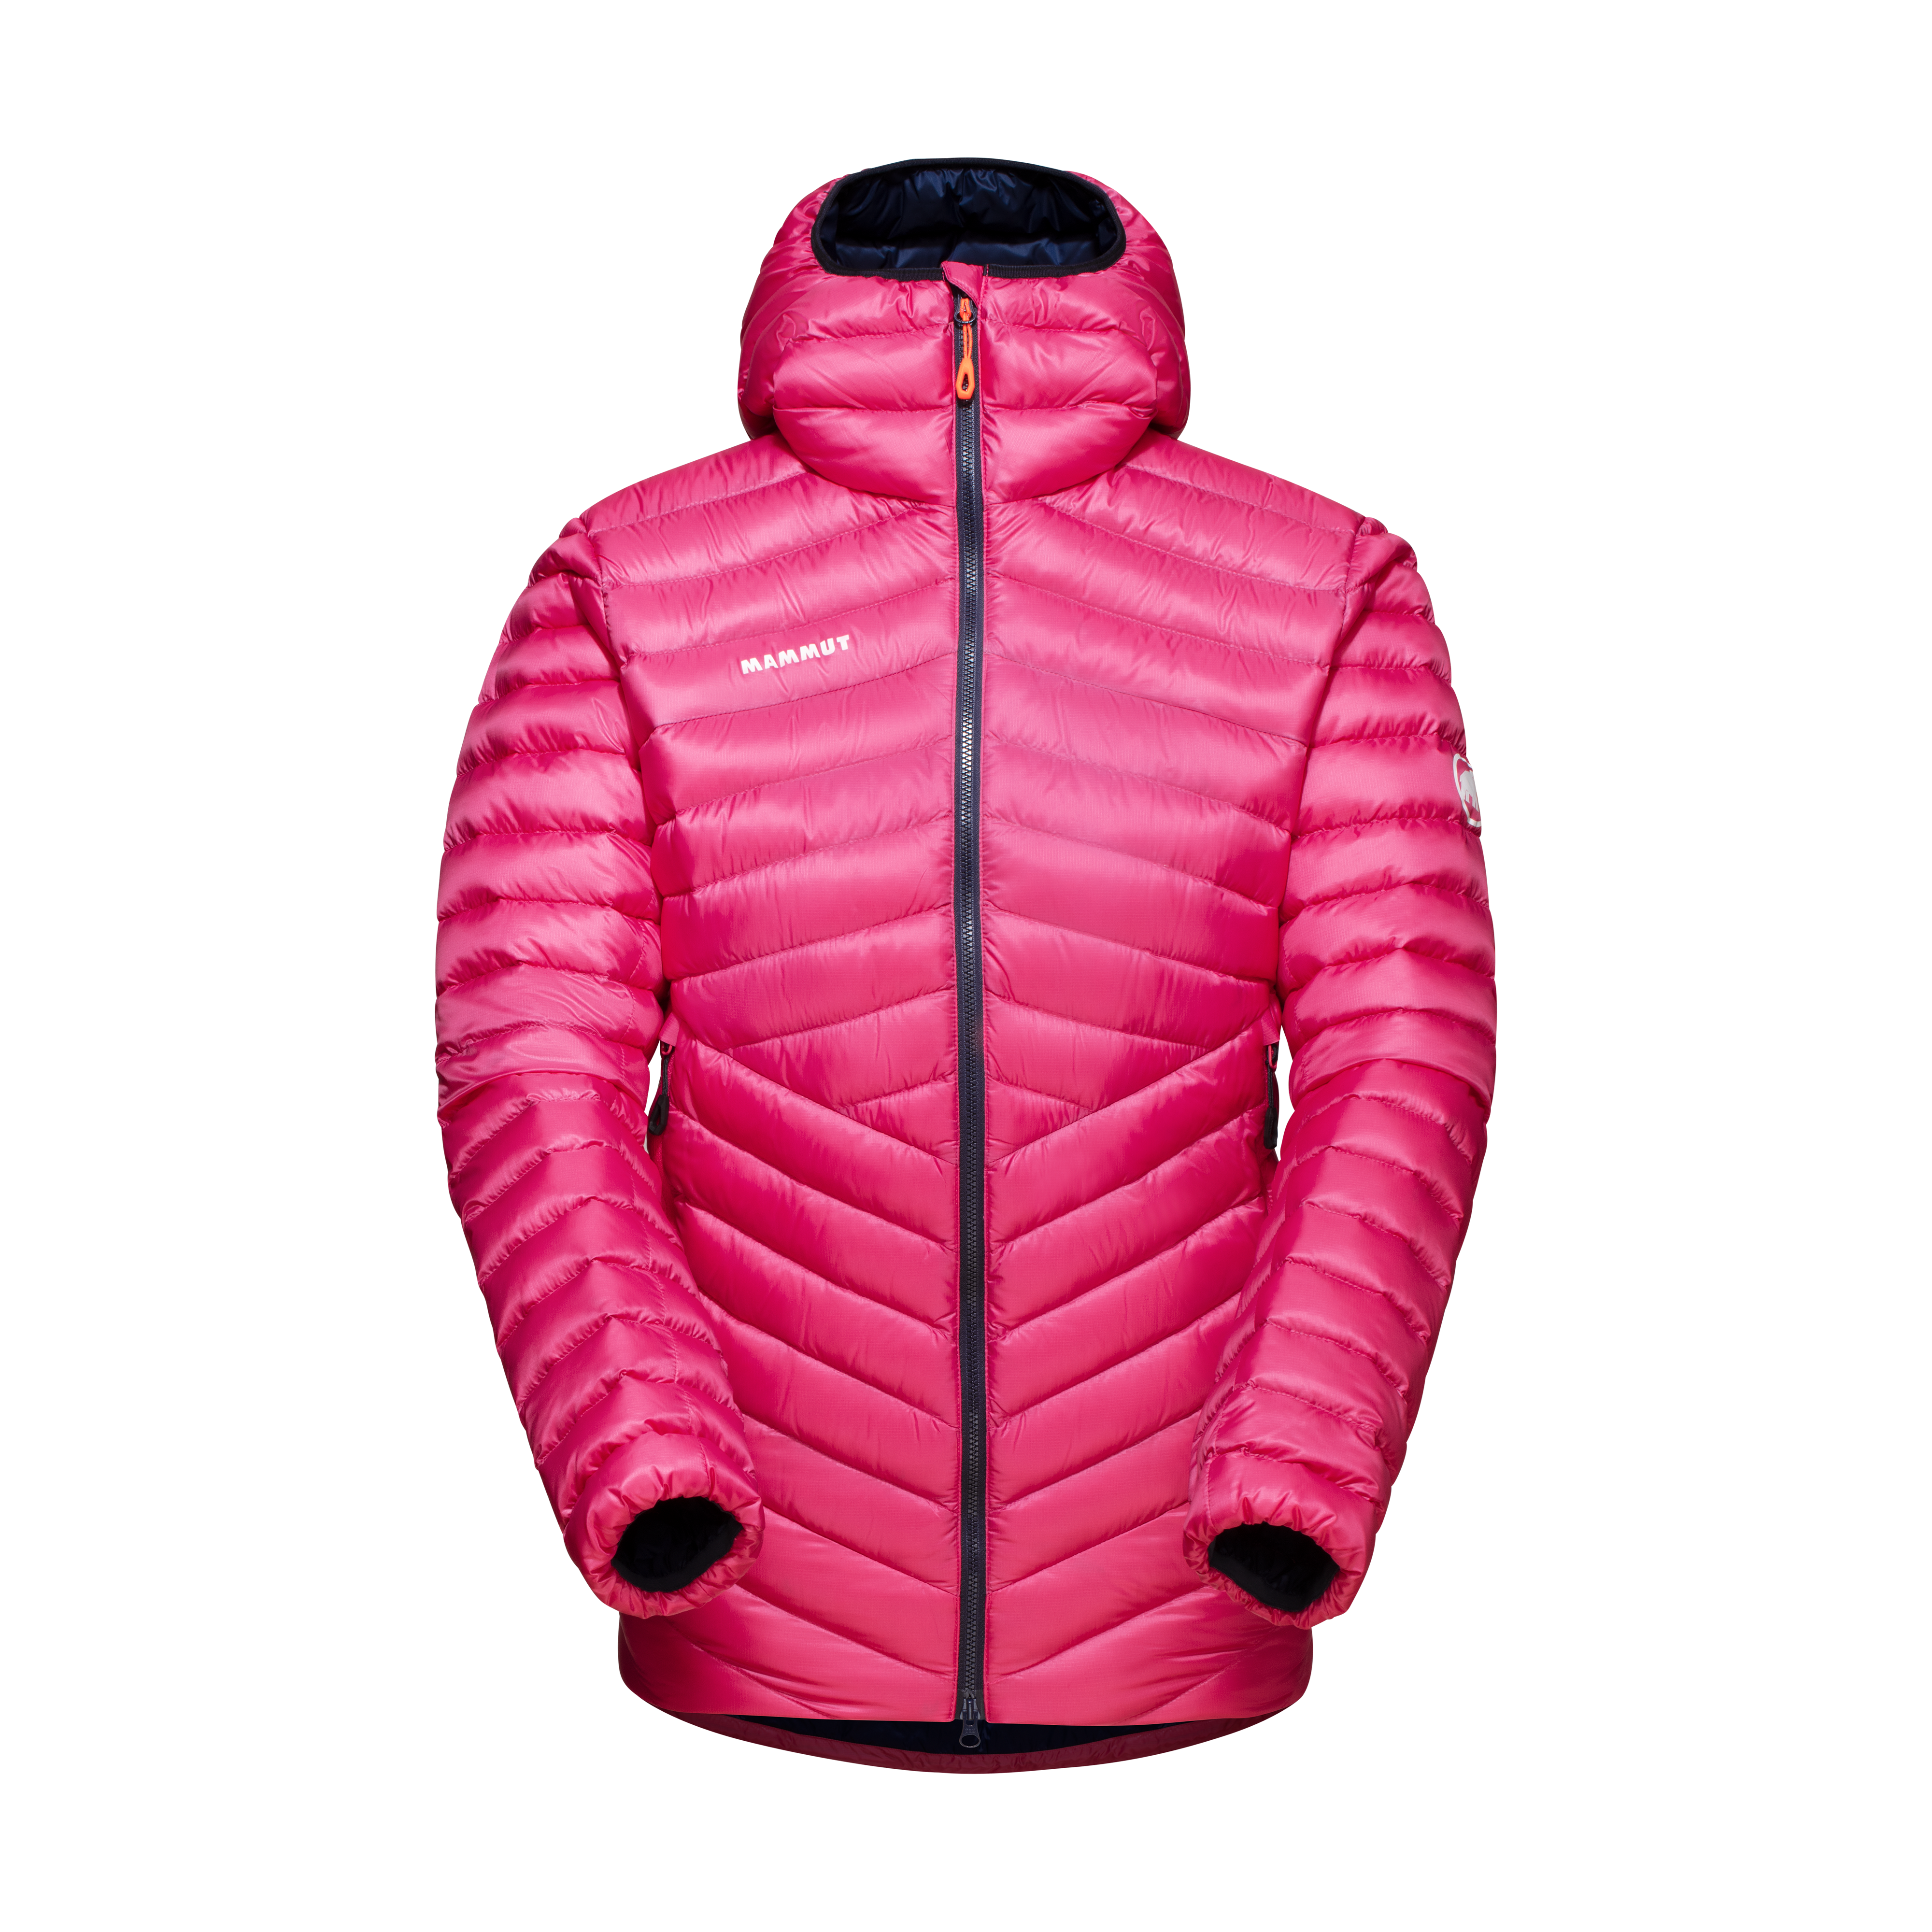 Broad Peak IN Hooded Jacket Women, pink-marine thumbnail